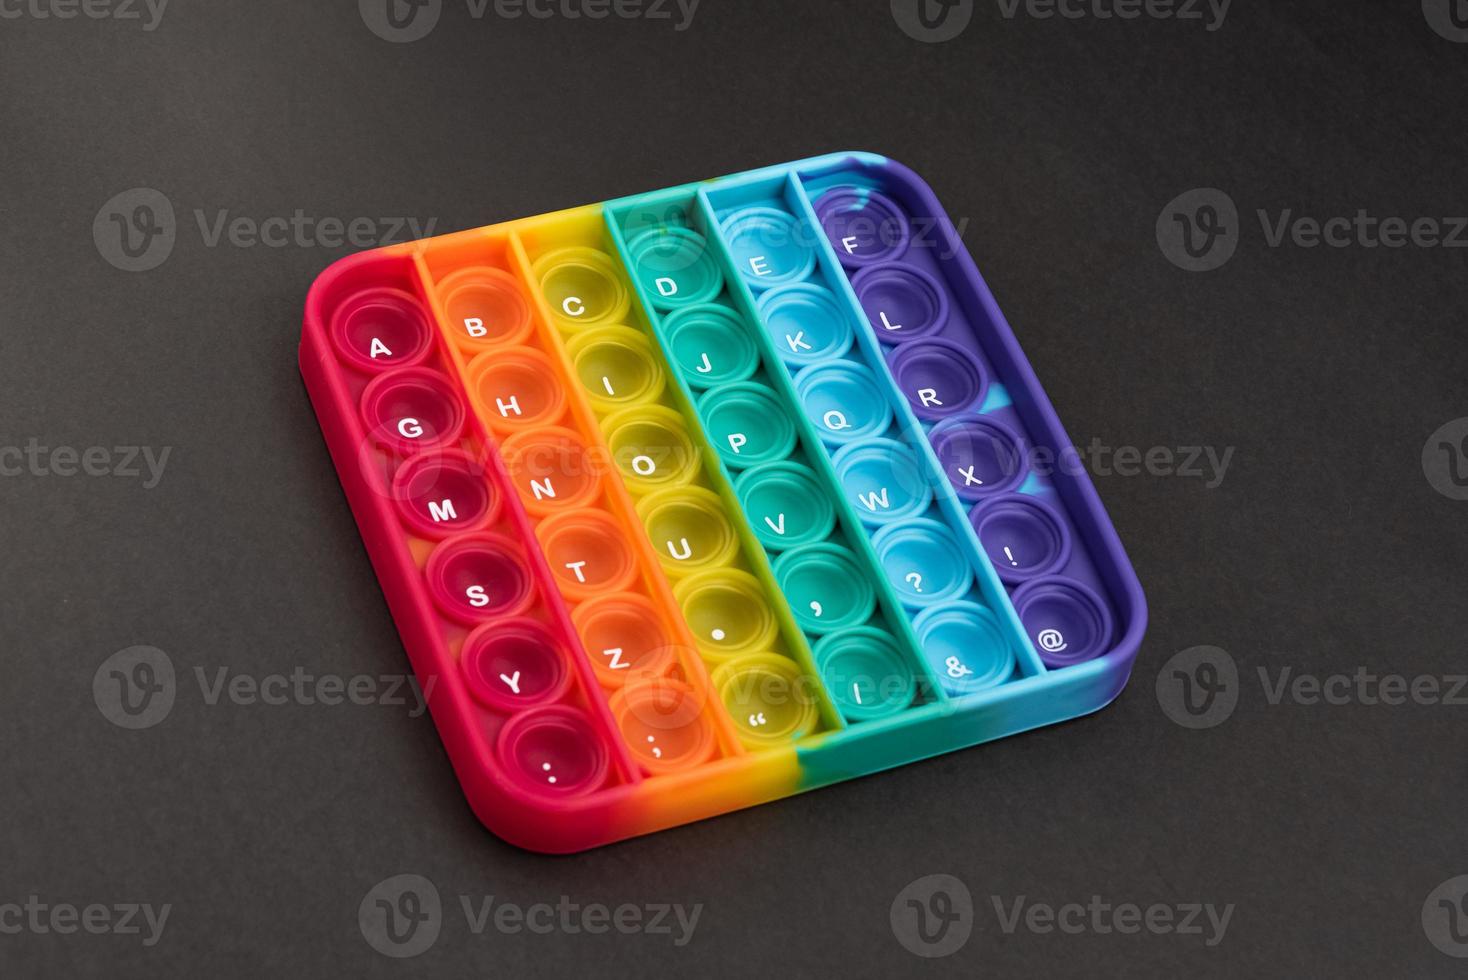 fidget pop it toy regnbågsfärg - antistress, roligt och lärorikt foto